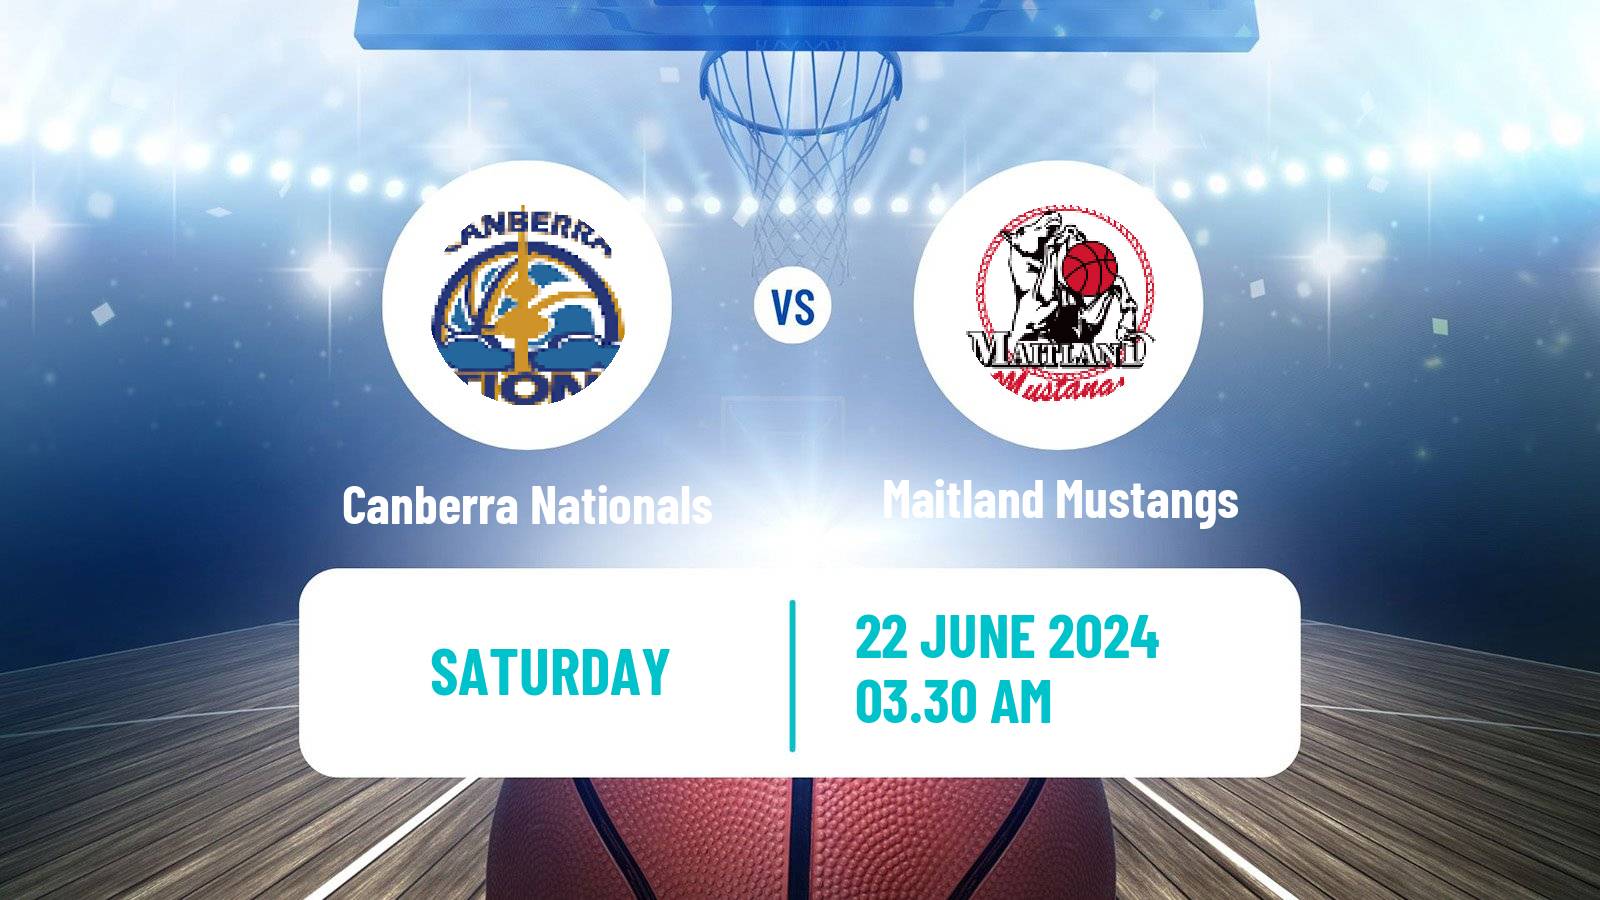 Basketball Australian NBL1 East Women Canberra Nationals - Maitland Mustangs